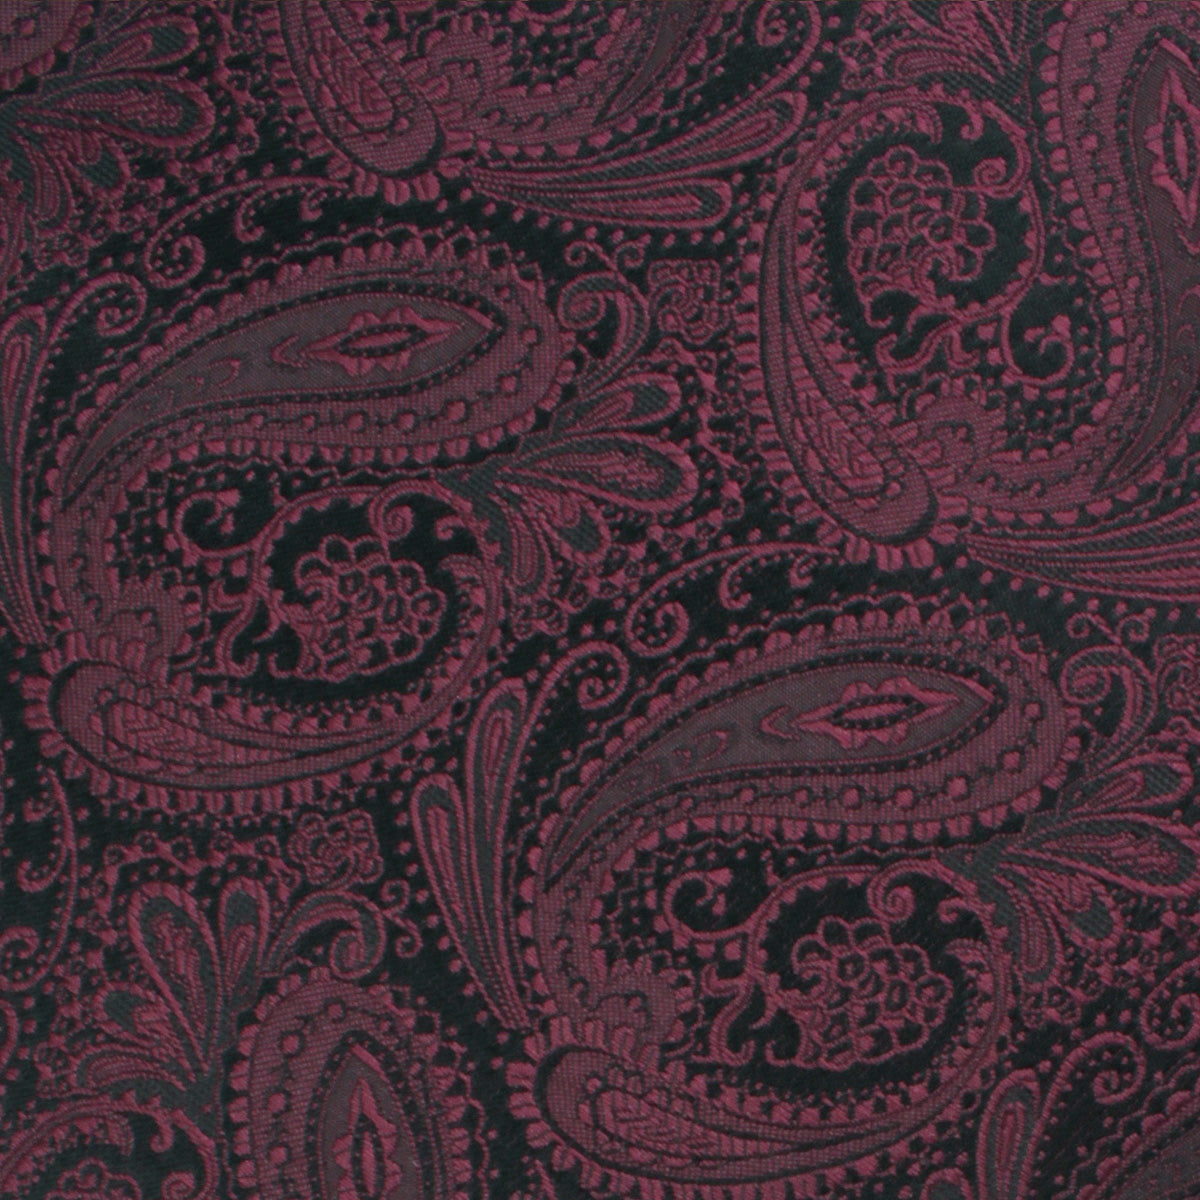 Mahogany Red Paisley Necktie Fabric